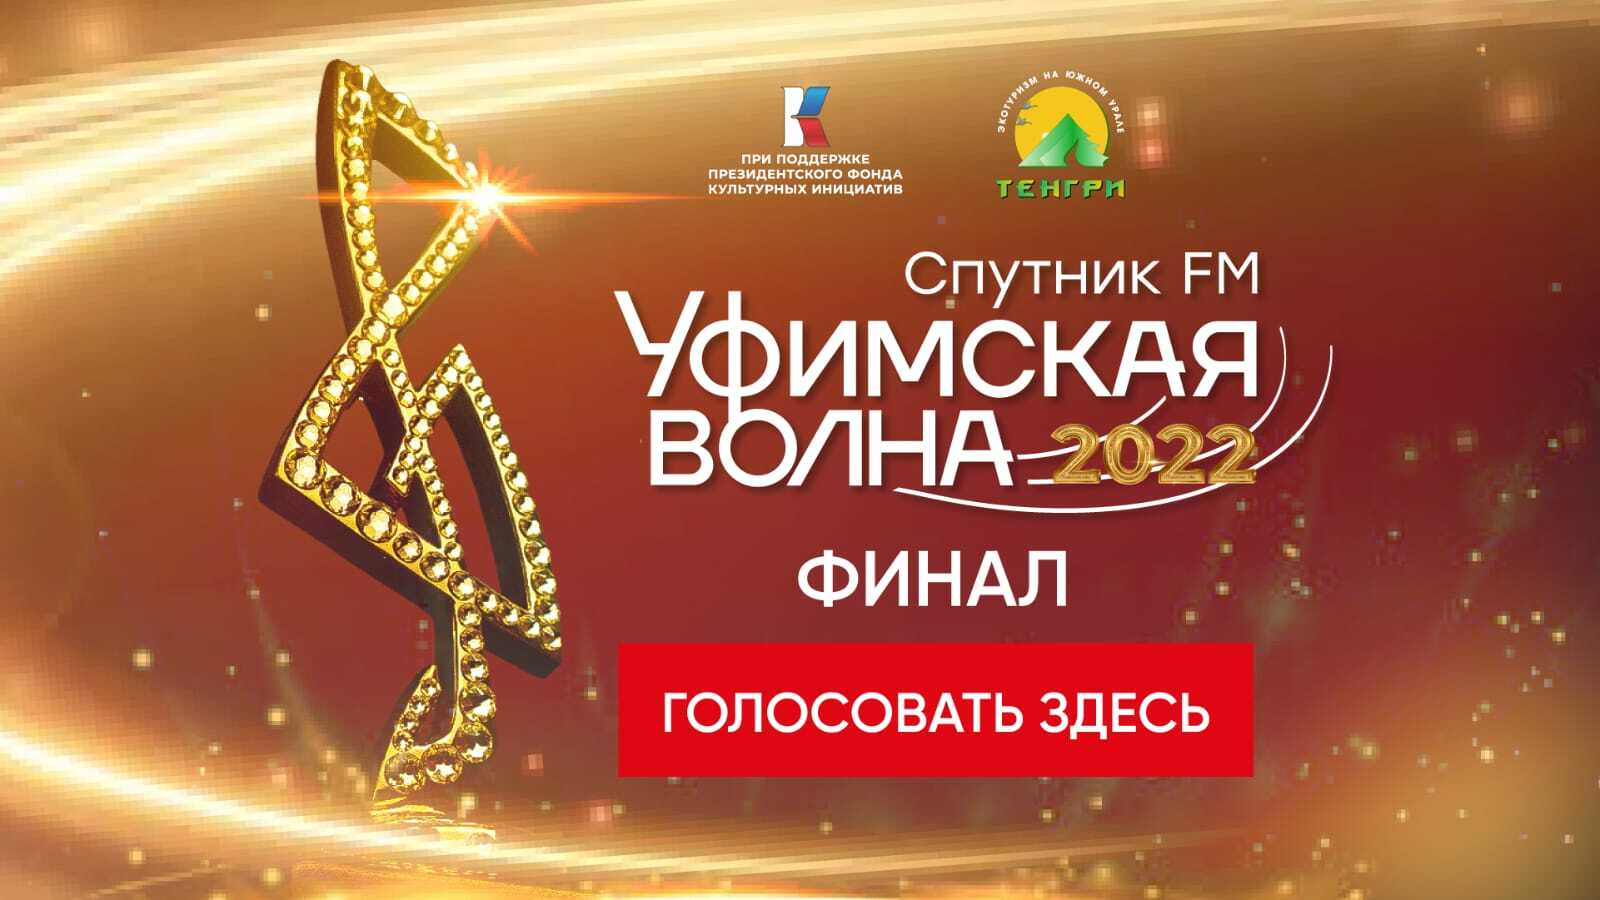 В Башкирии проходит финальное голосование музыкального конкурса Уфимская Волна 2022